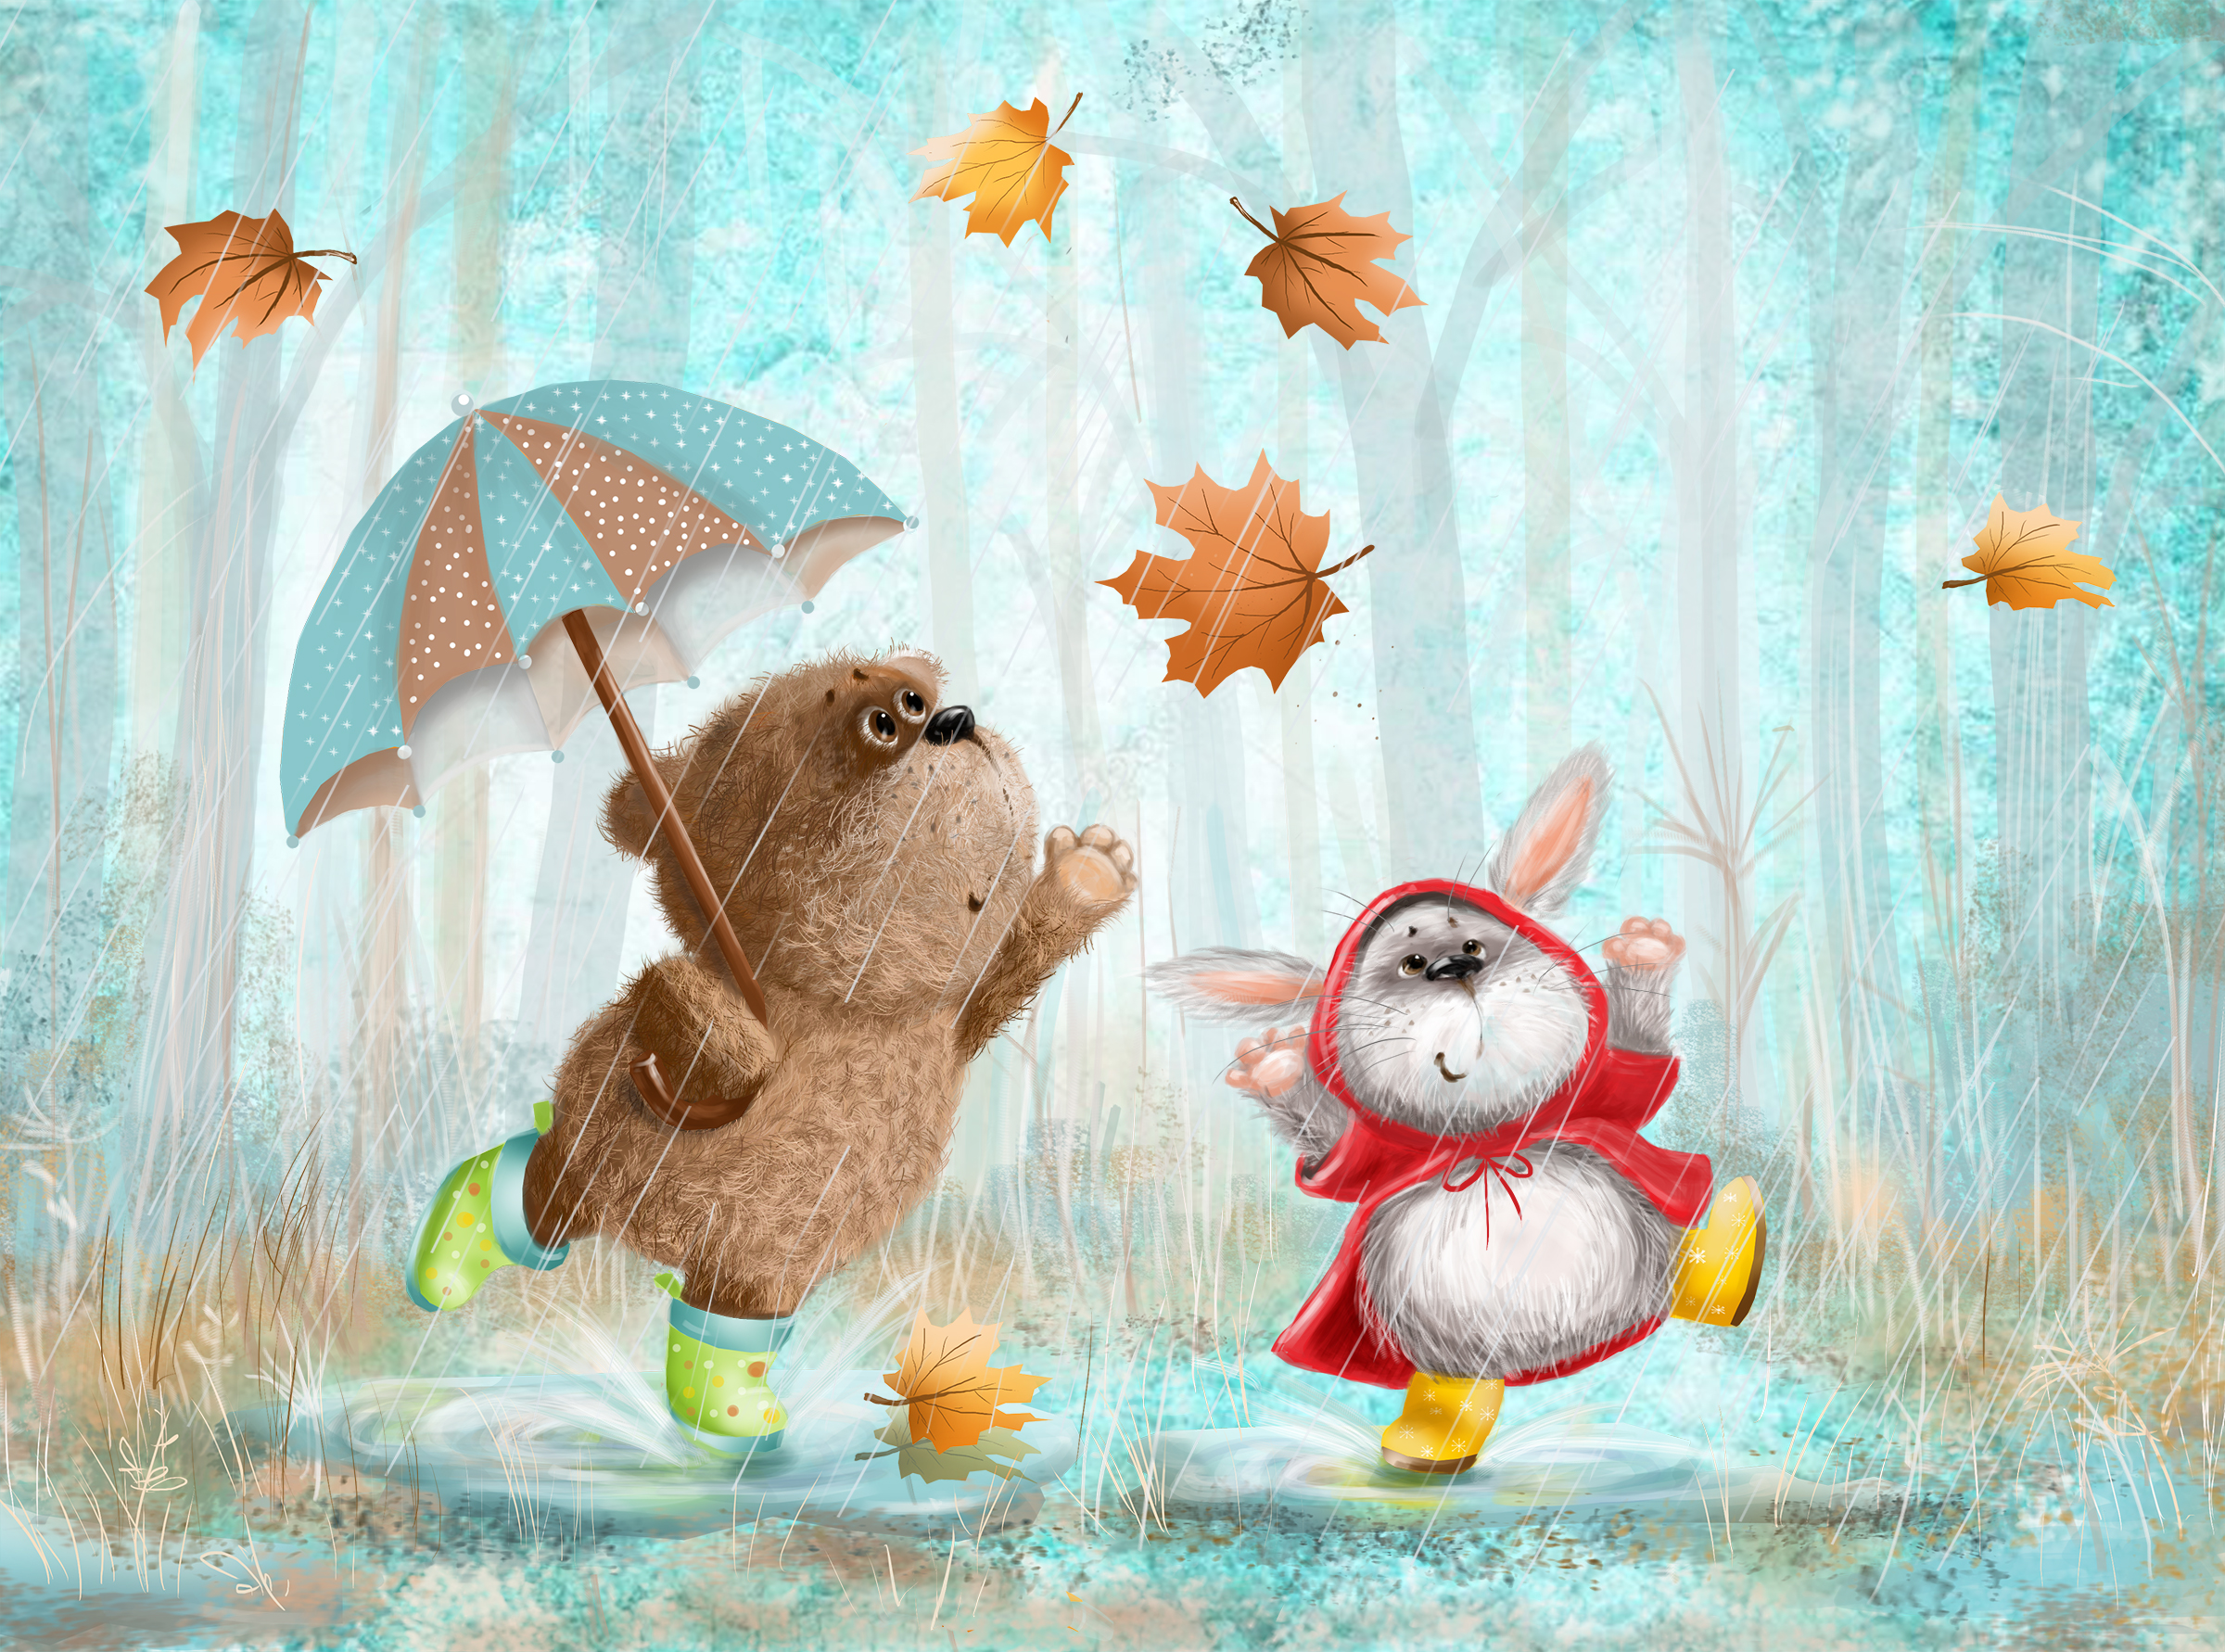 Как животные радуются дождю. Зверюшки под дождем. Зверюшки под зонтиком. Осень. Зайка. Дождик. Сказка про животных которые радуются дождю.